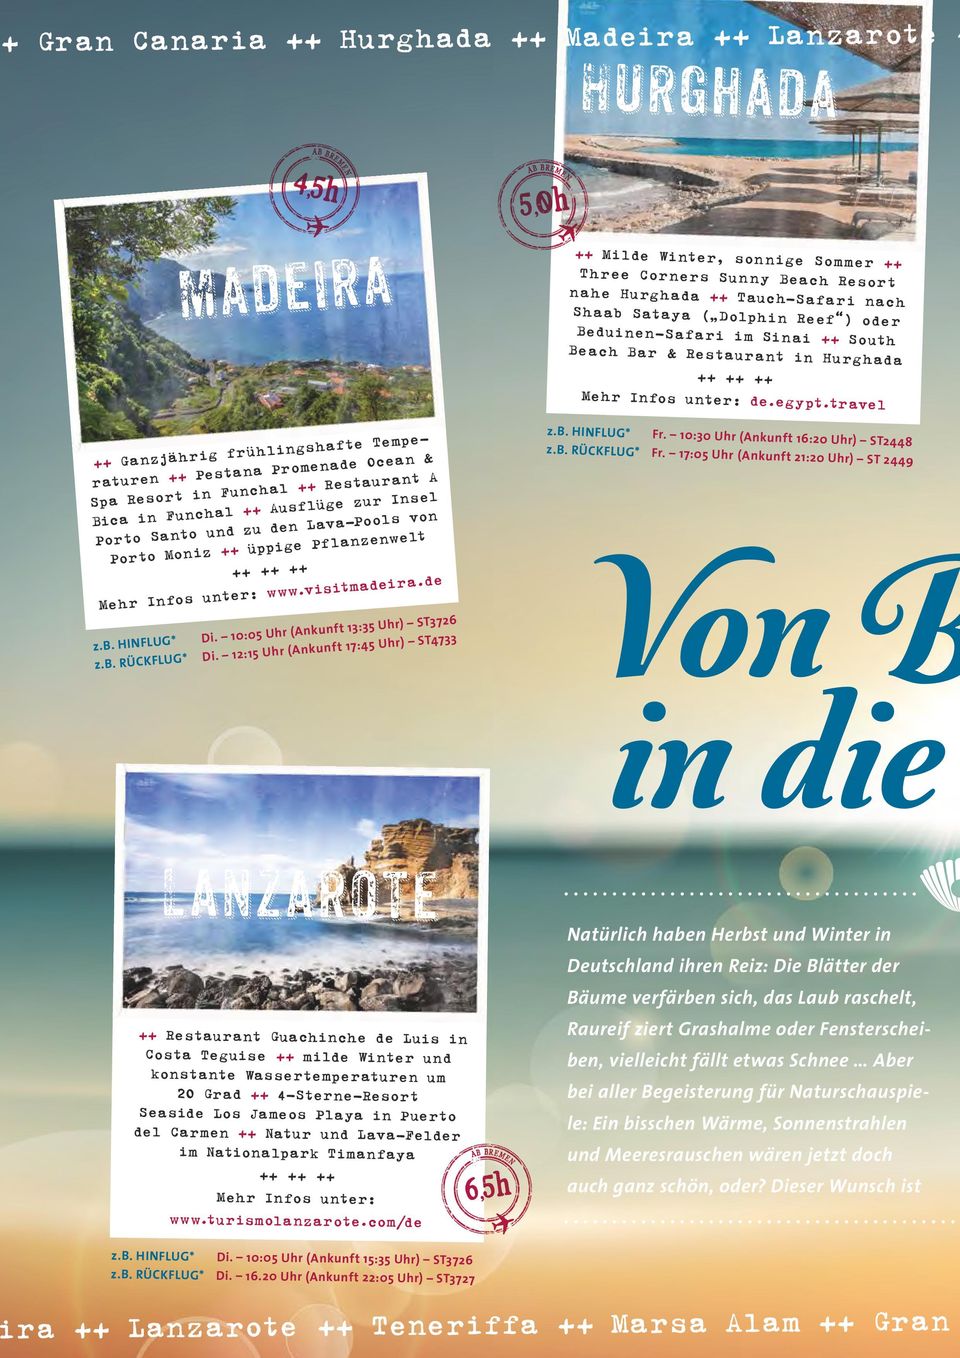 travel ++ Ganzjährig frühlingshafte Temperaturen ++ Pestana Promenade Ocean & Spa Resort in Funchal ++ Restaurant A Bica in Funchal ++ Ausflüge zur Insel Porto Santo und zu den Lava-Pools von Porto